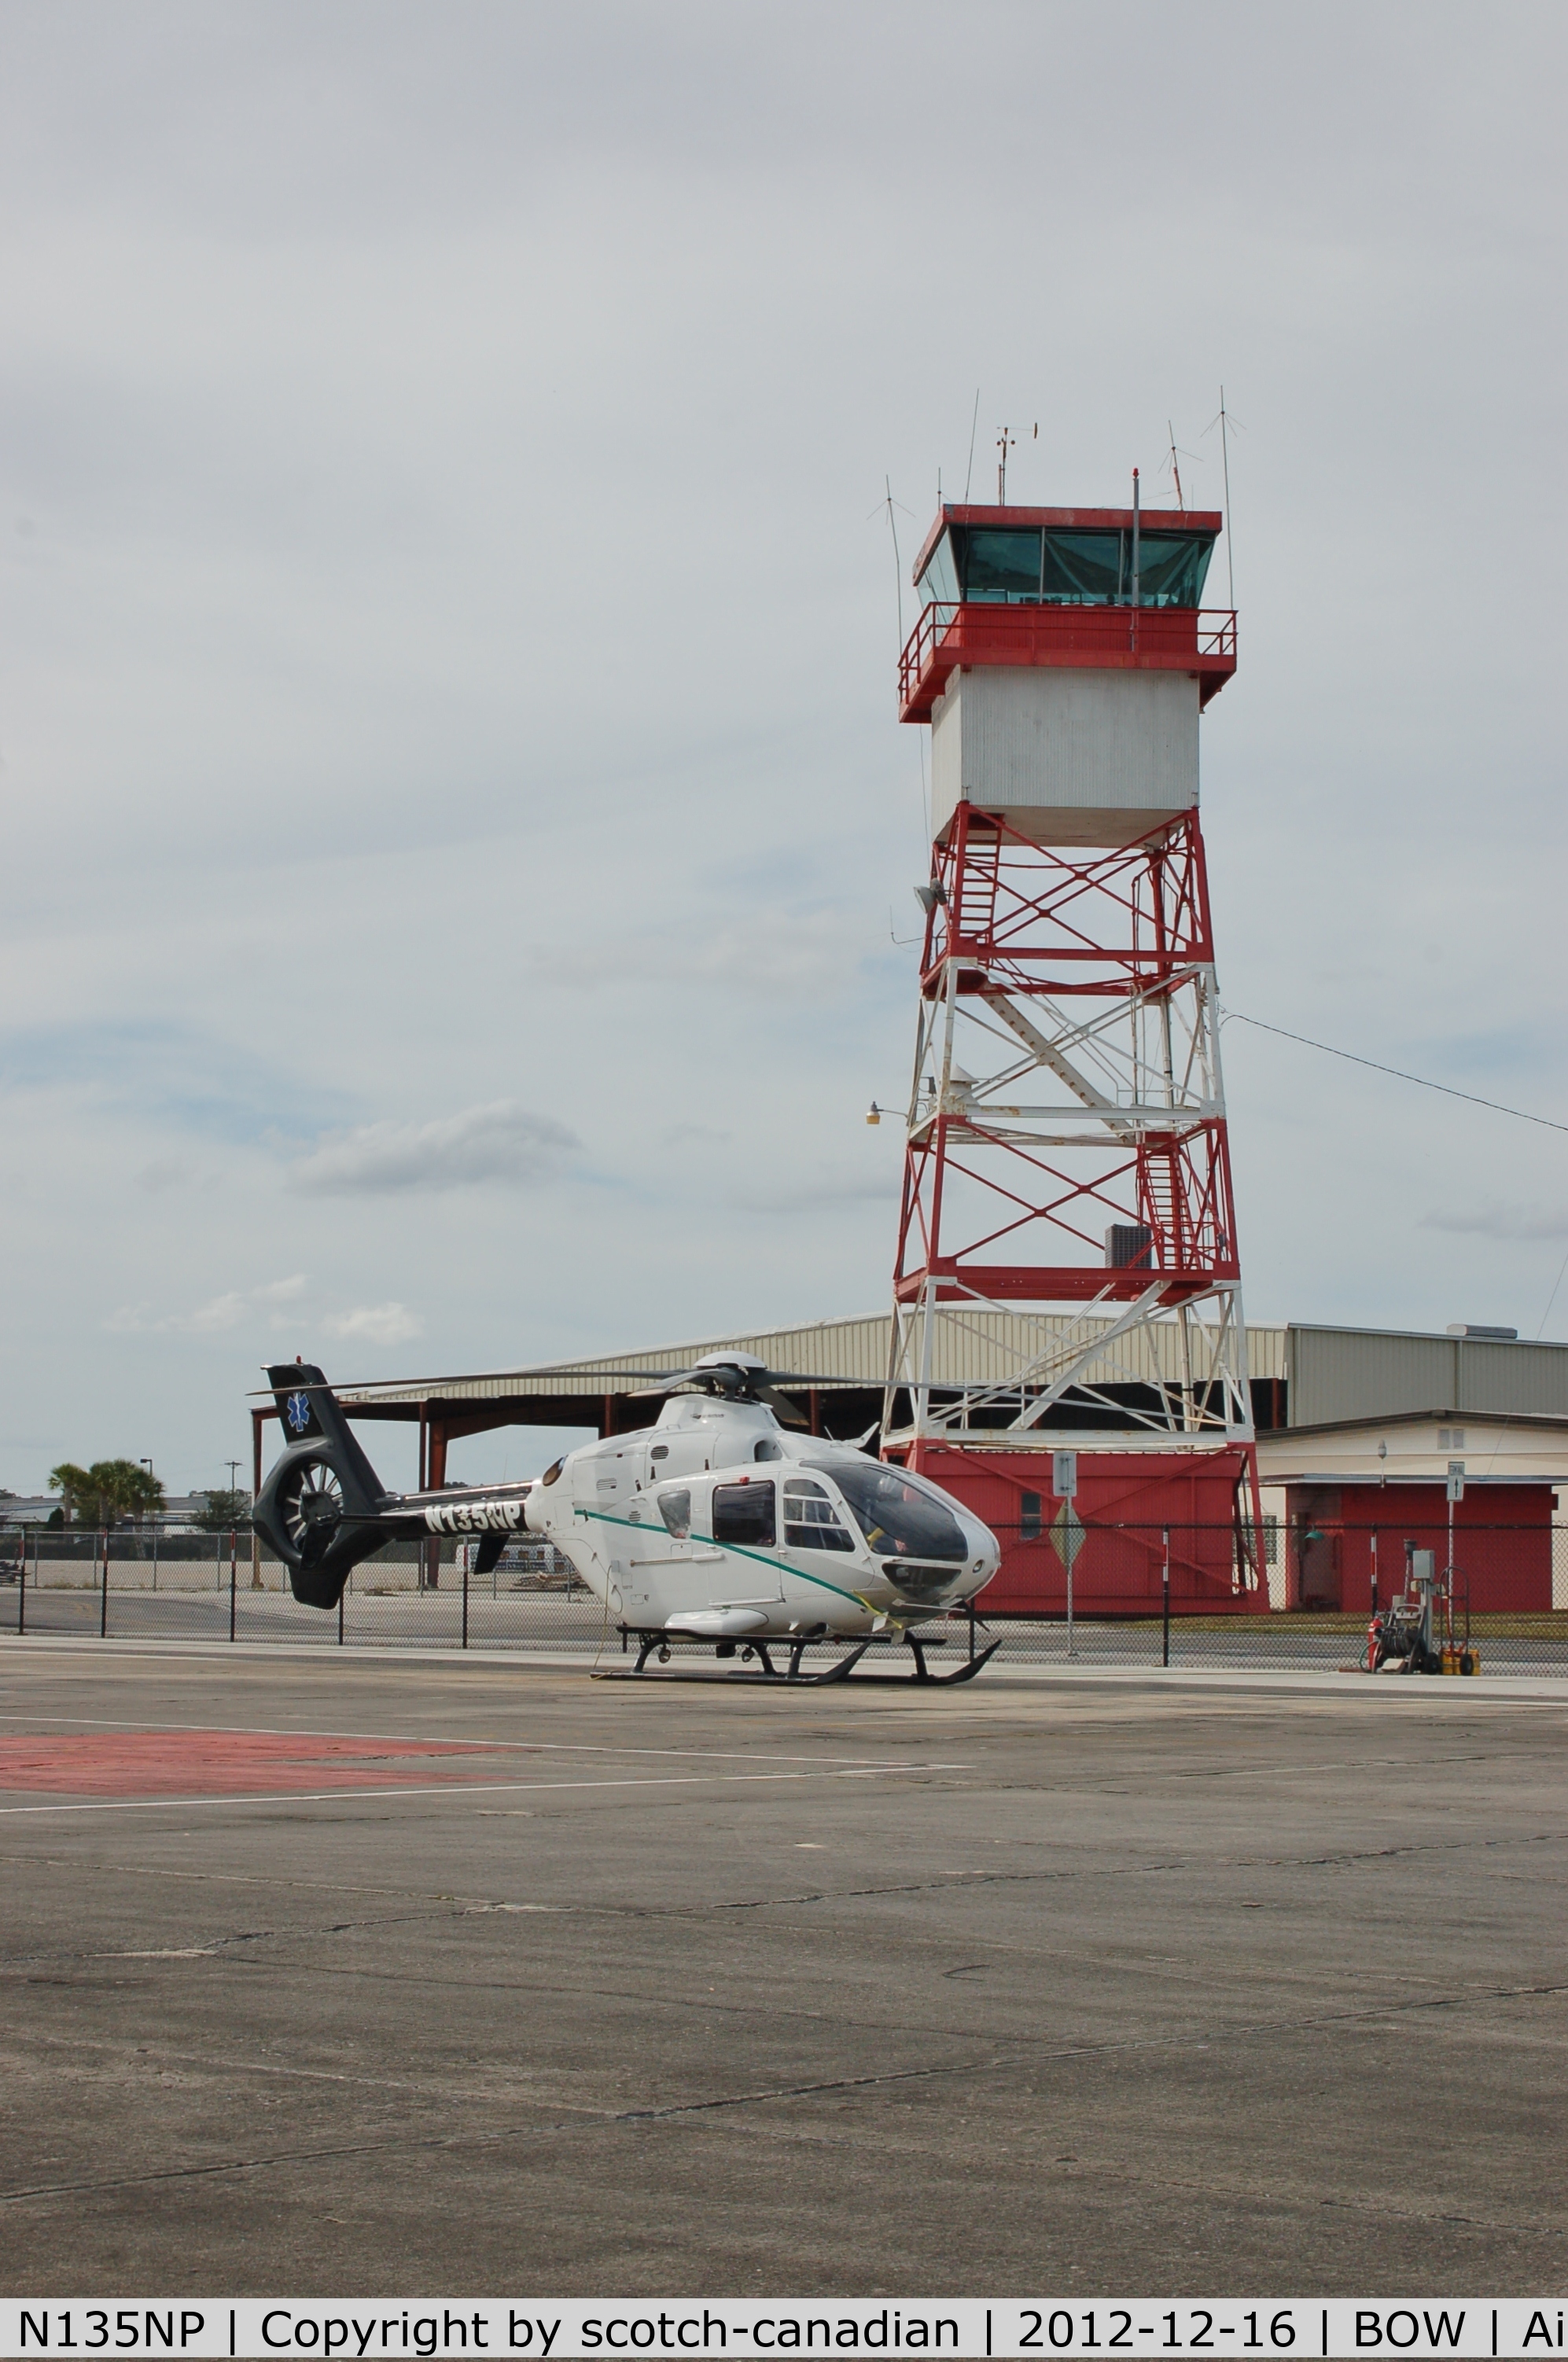 N135NP, 1998 Eurocopter EC-135T-1 C/N 0068, 1998 Eurocopter Deutschland Gmbh EC135T1, N135NP, at Bartow Municipal Airport, Bartow, FL